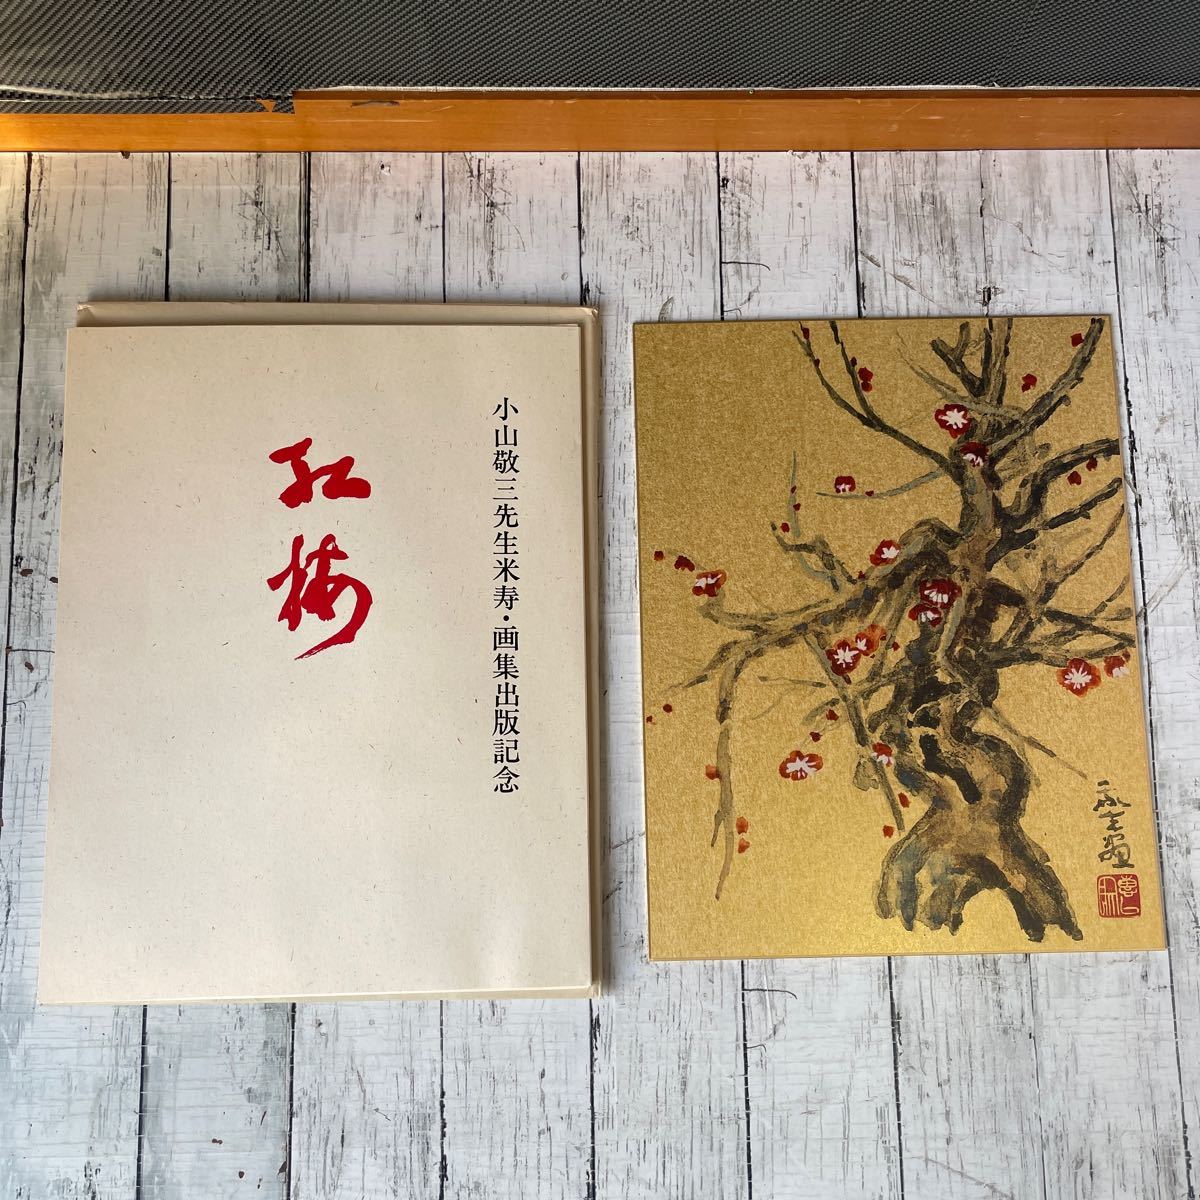 小山敬三先生米寿・画集出版記念 金彩色紙画「紅梅」